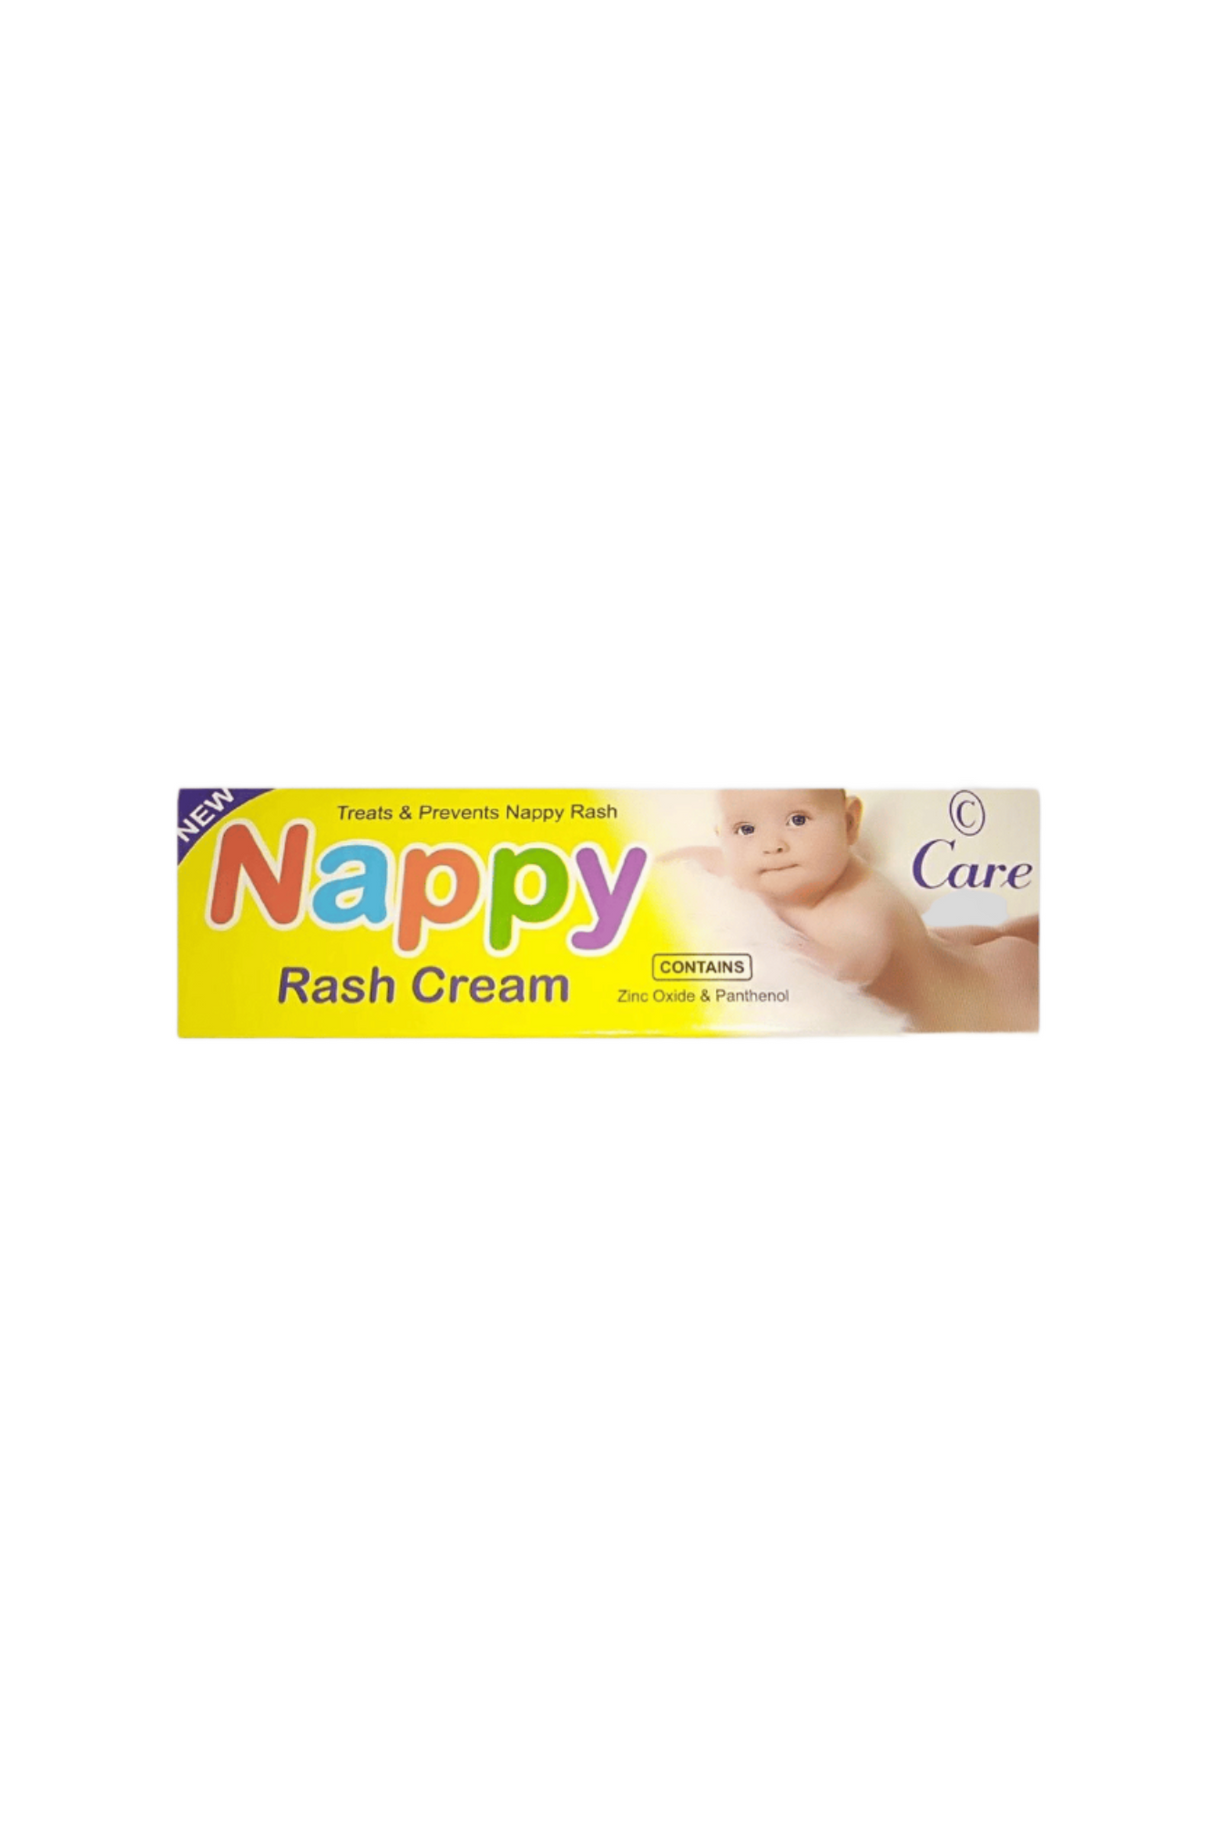 care nappy rash cream 25ml